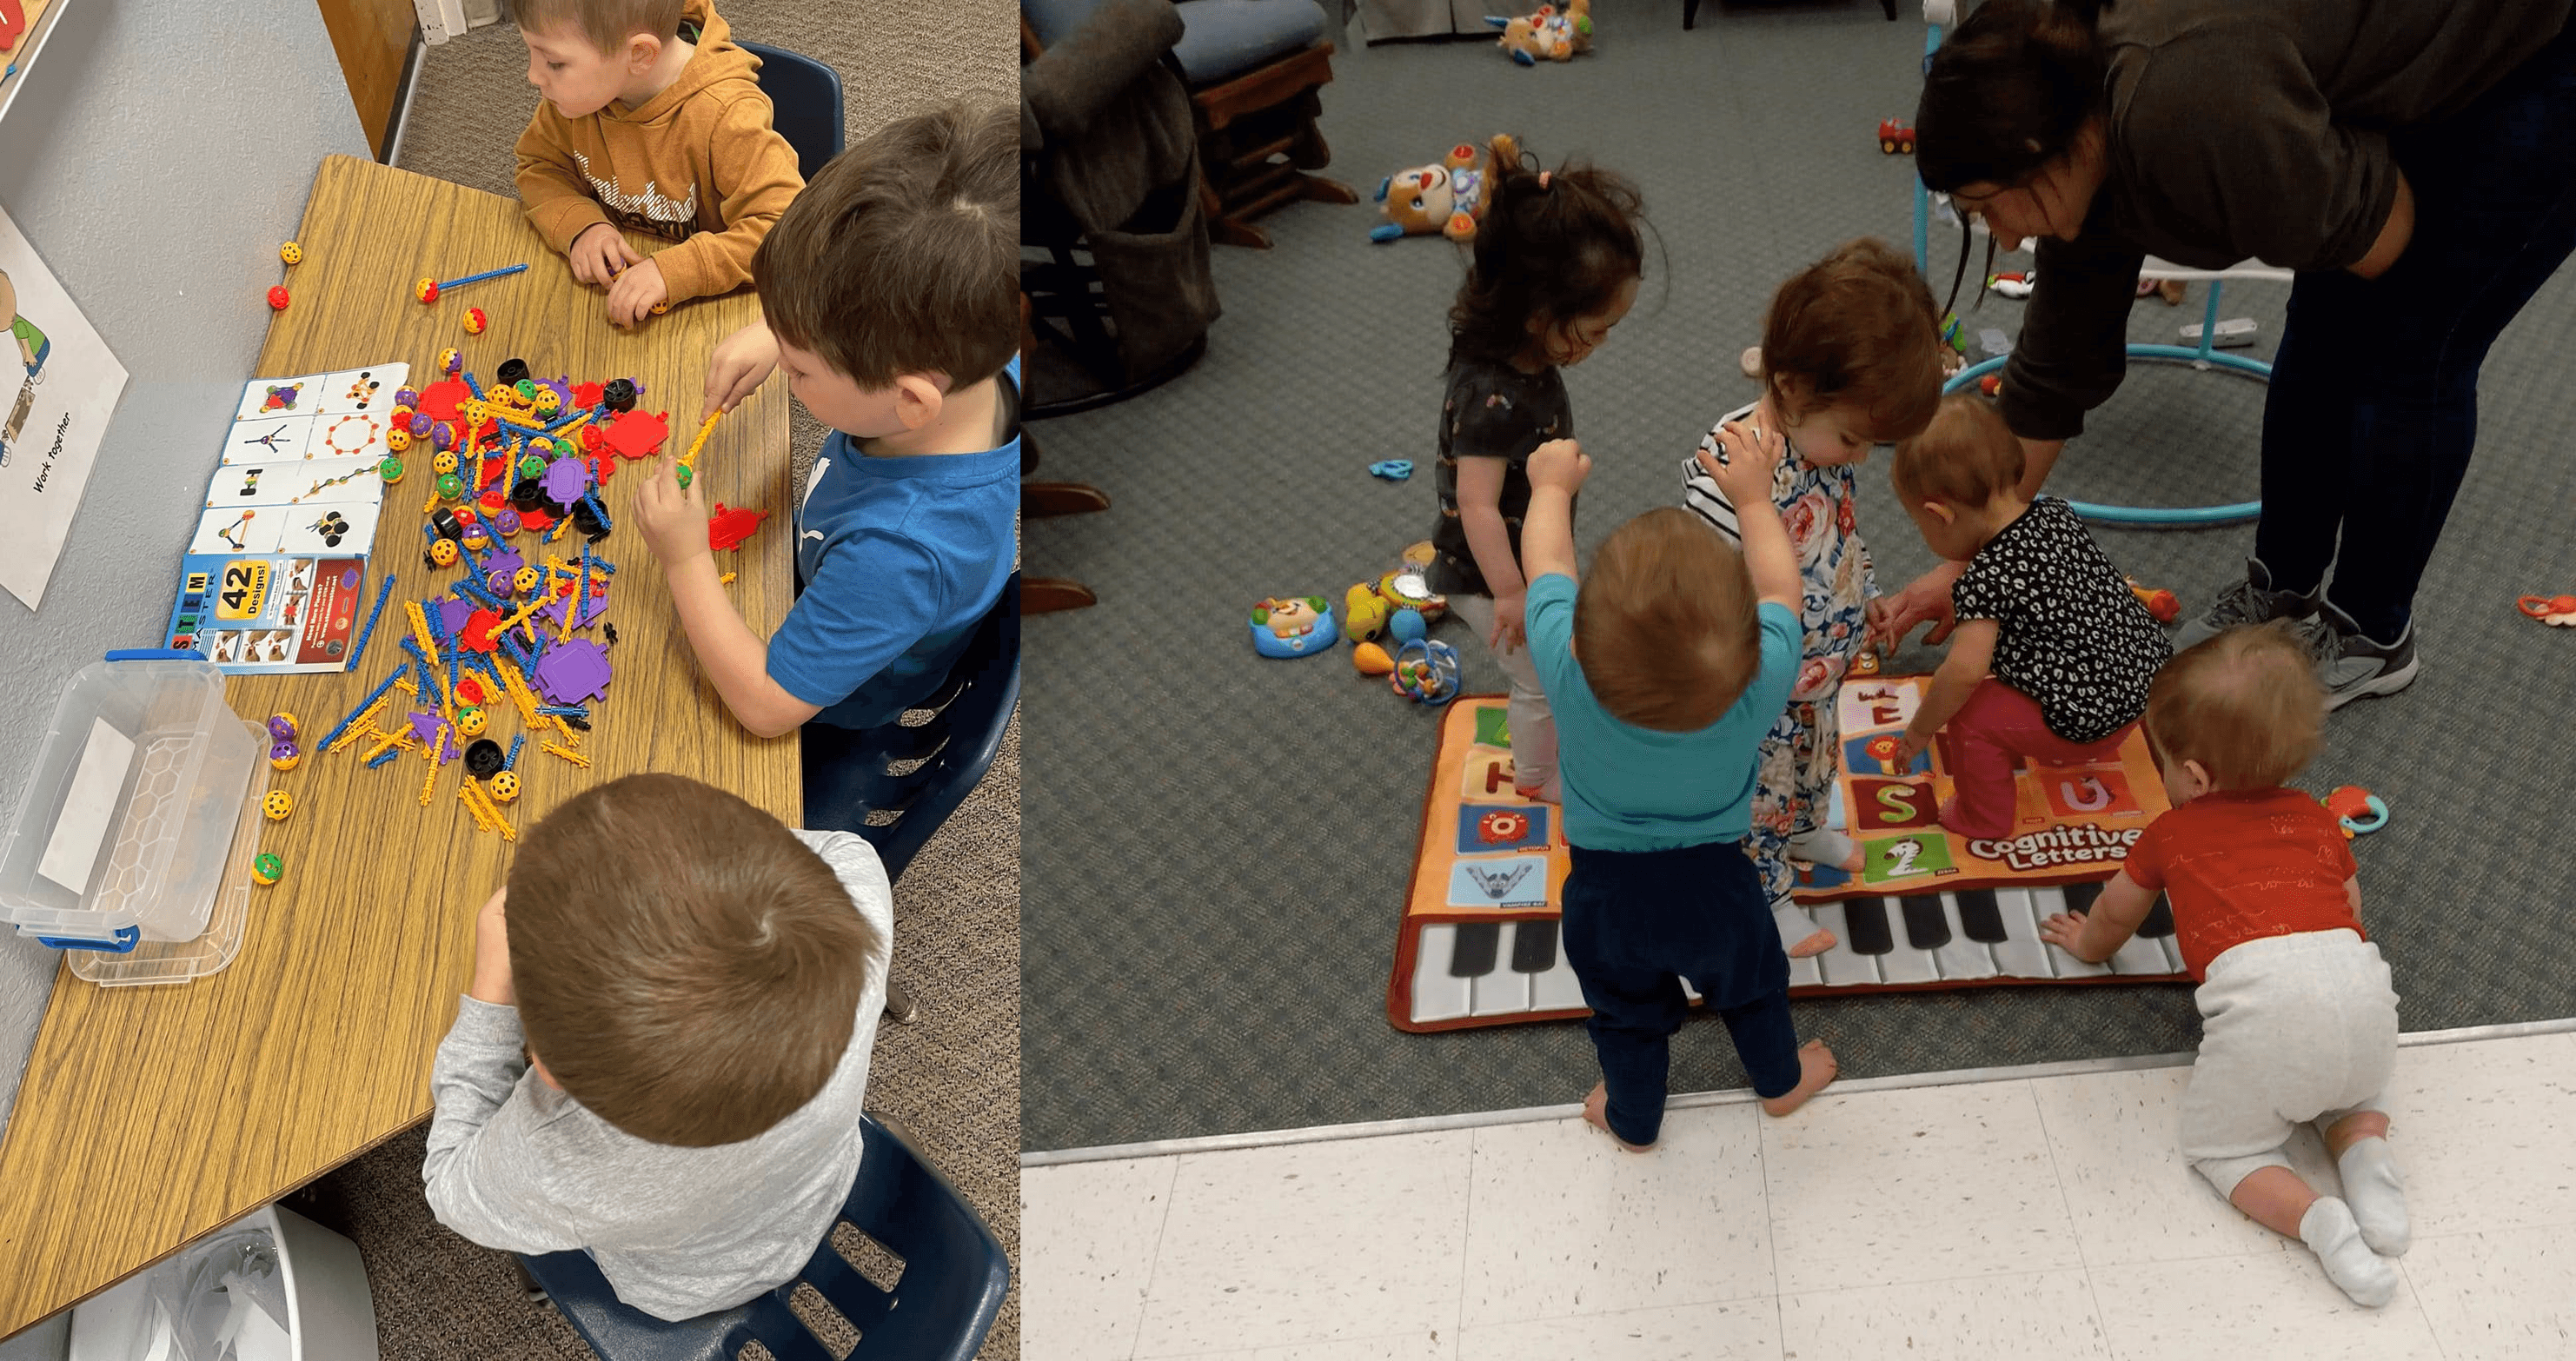 New developmental toys for Parkview Kids Christian Learning Center